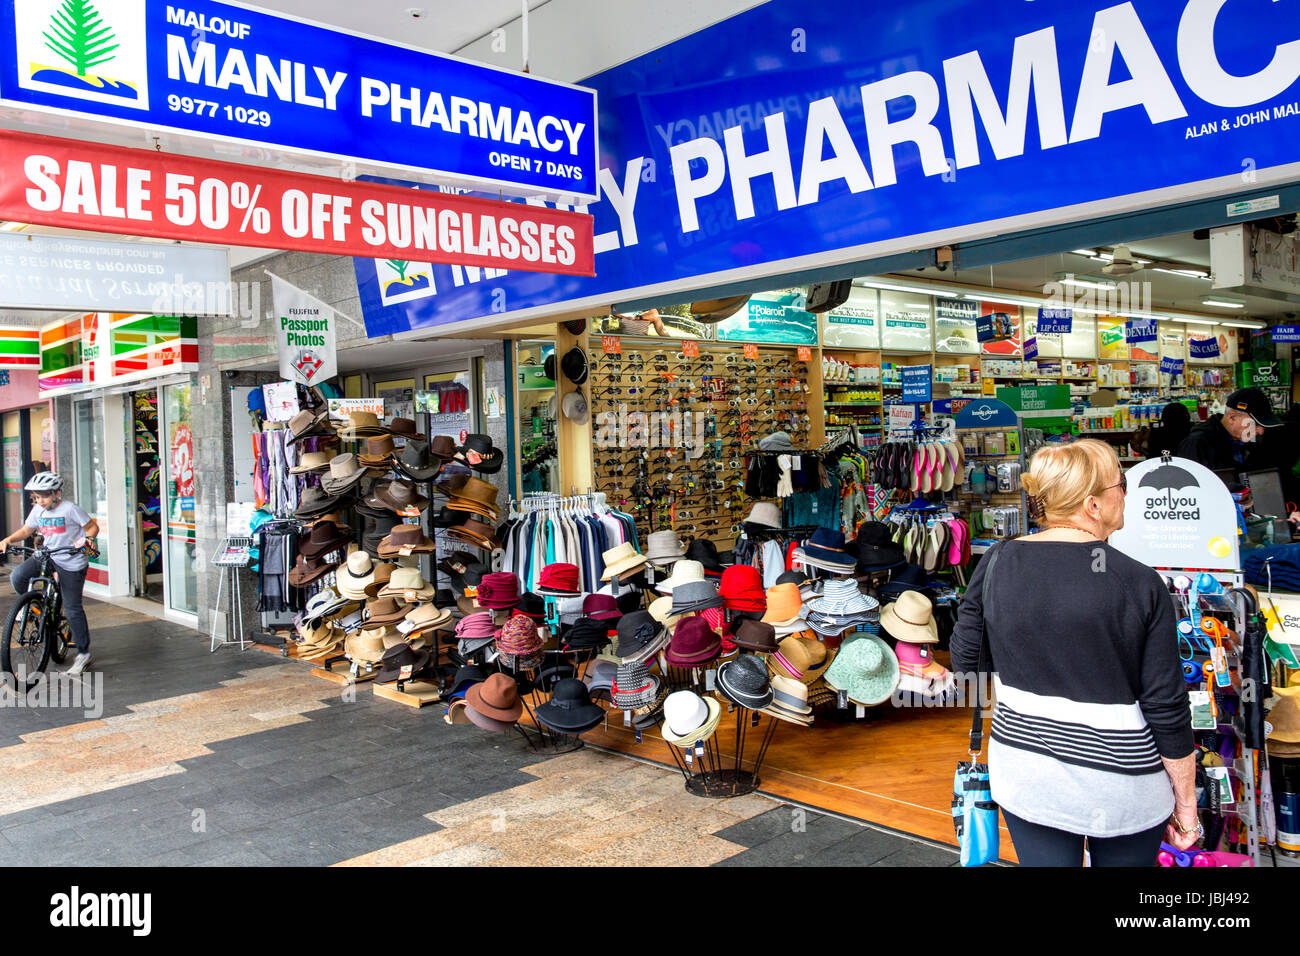 Australische Apotheke Apotheke Apotheke Apotheke Shop in Manly Beach, Sydney, Australien, Eintritt in Drogeriemarkt, in dem Hüte verkauft werden Stockfoto